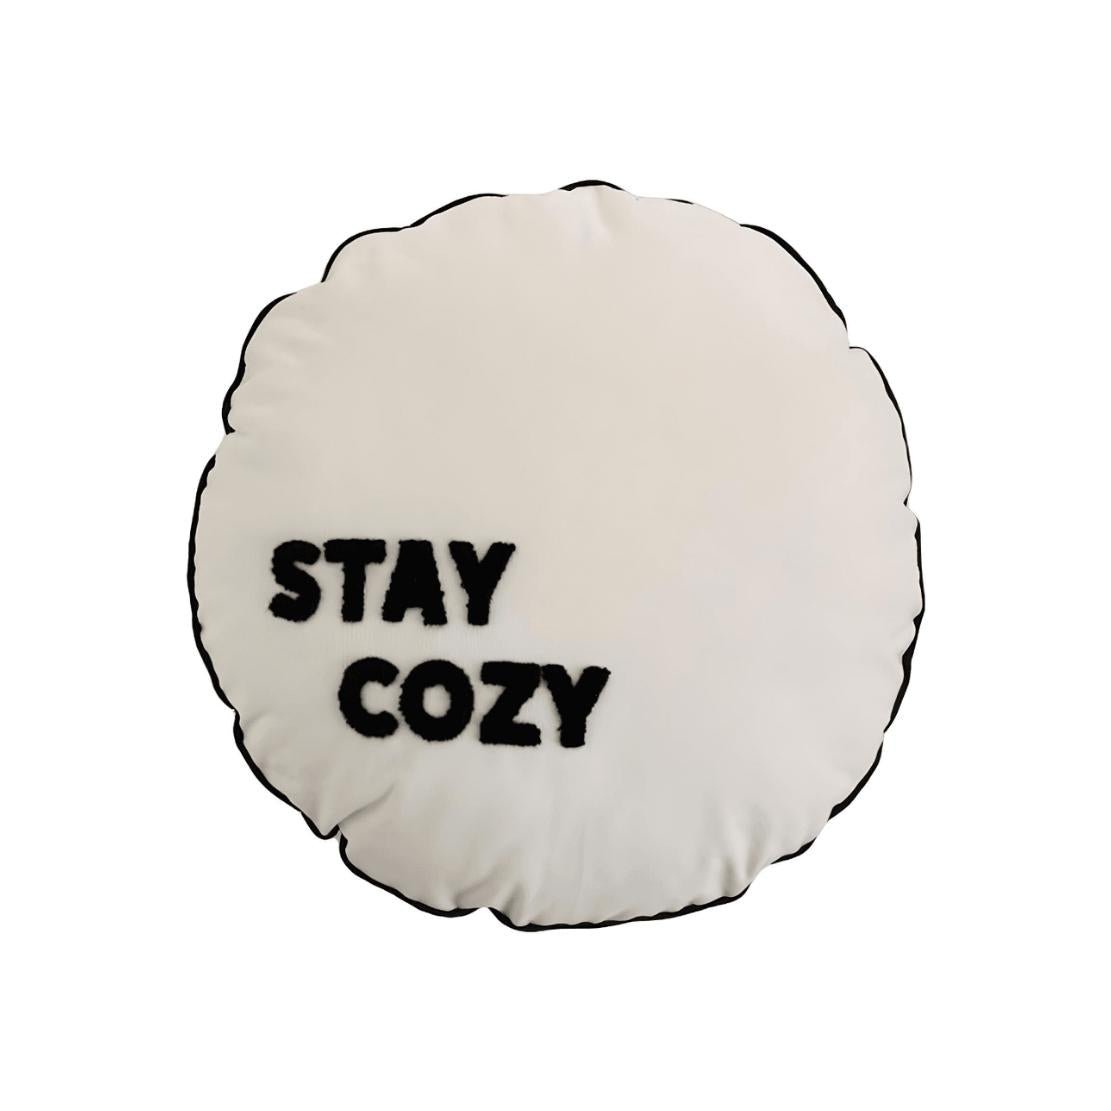 Black & white round cozy decorative throw pillow